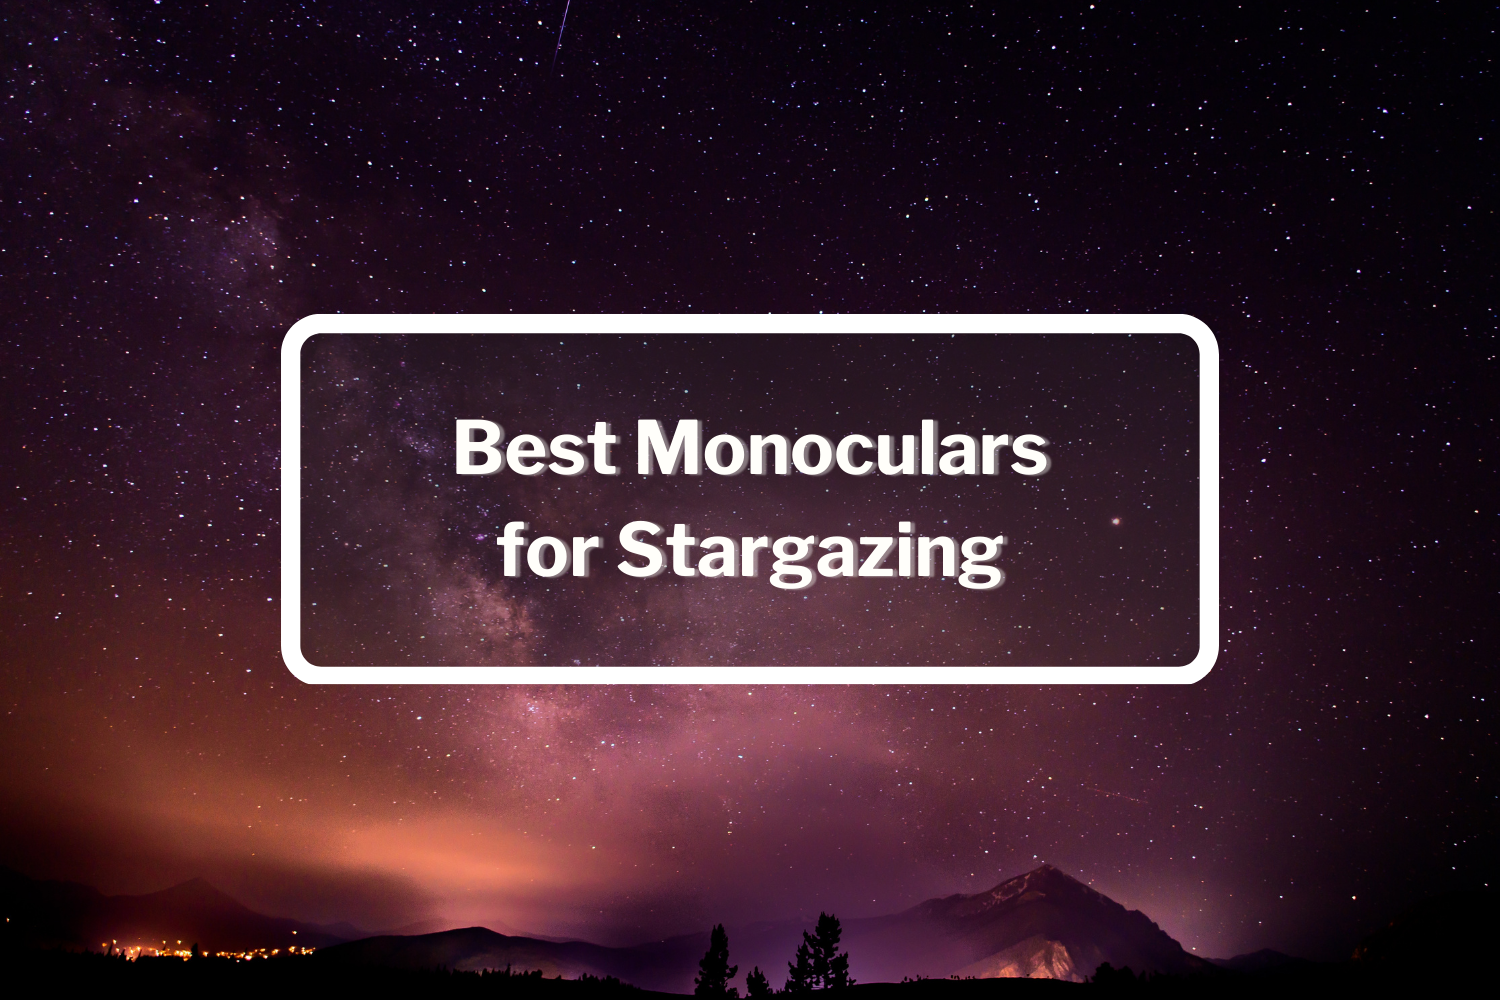 Best Monoculars for Stargazing